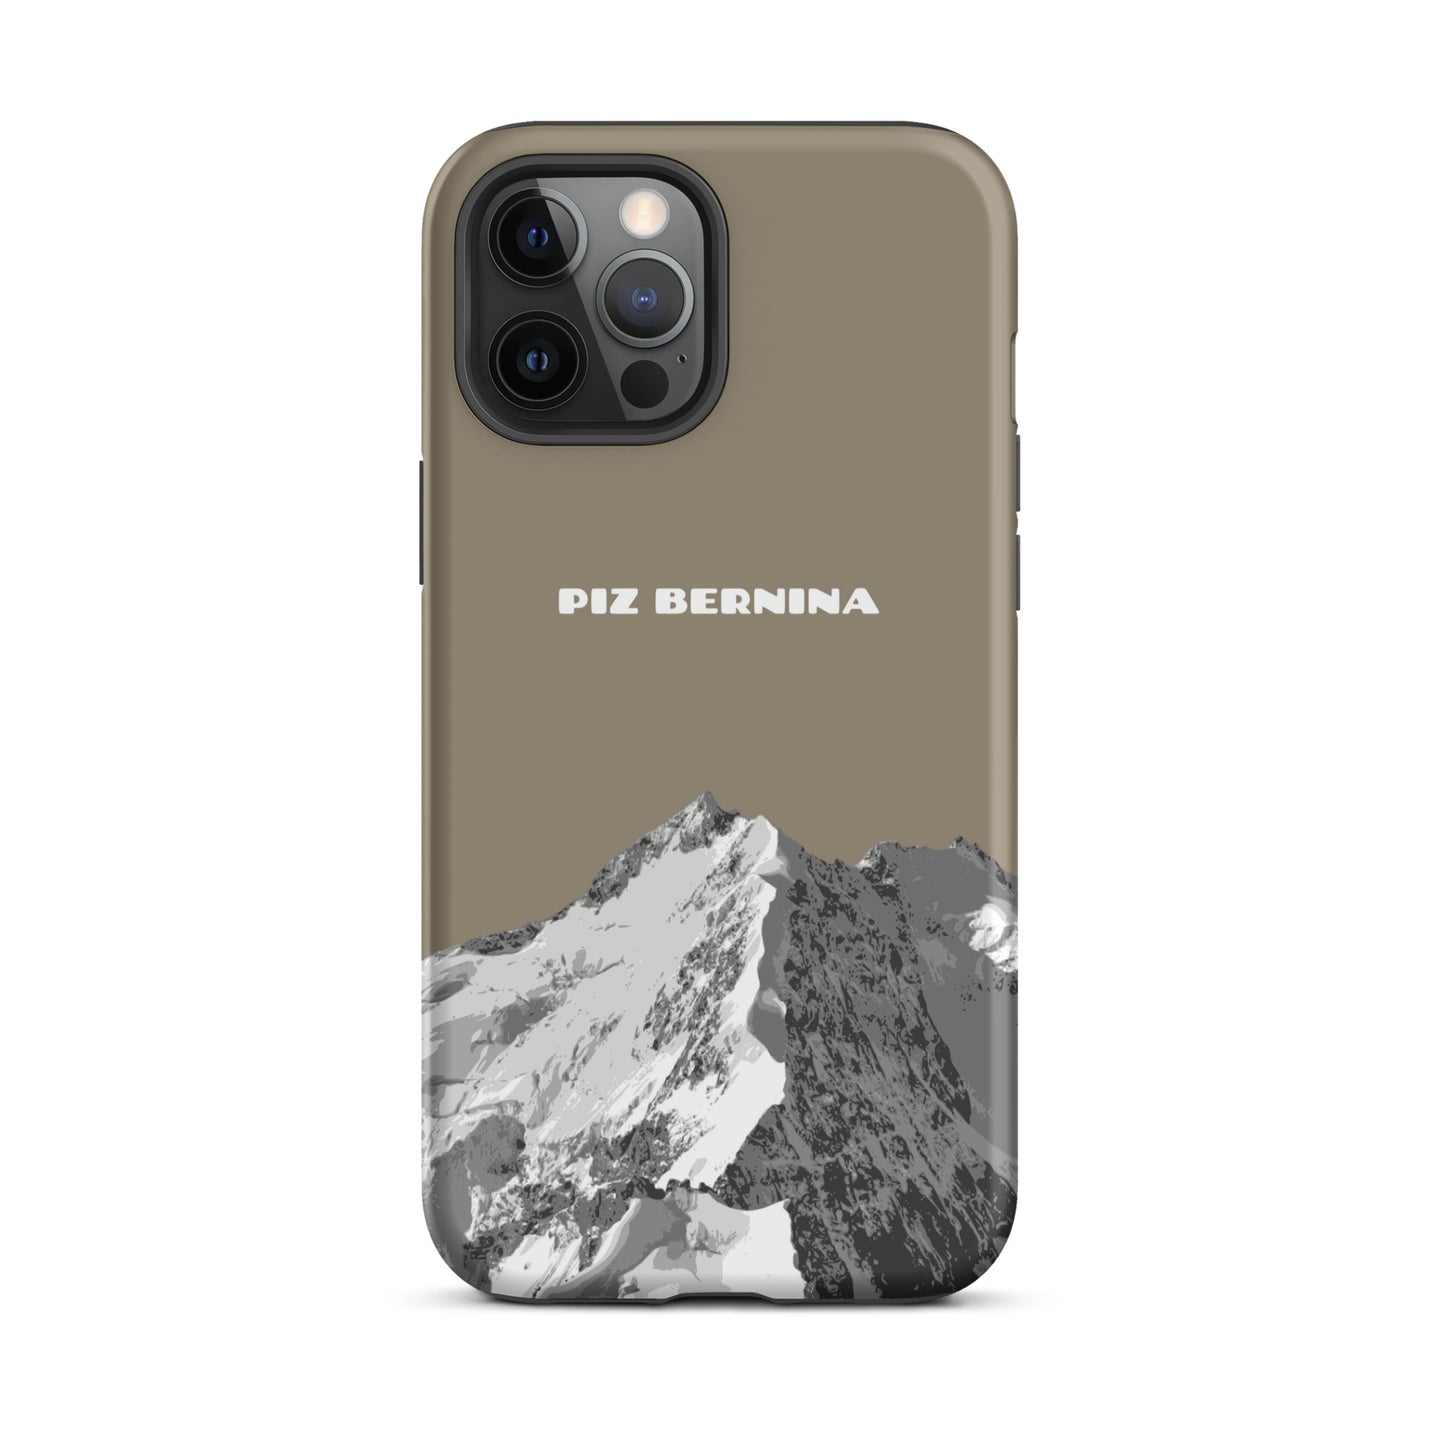 Hülle für das iPhone 12 Pro Max von Apple in der Farbe Graubraun, dass den Piz Bernina in Graubünden zeigt.